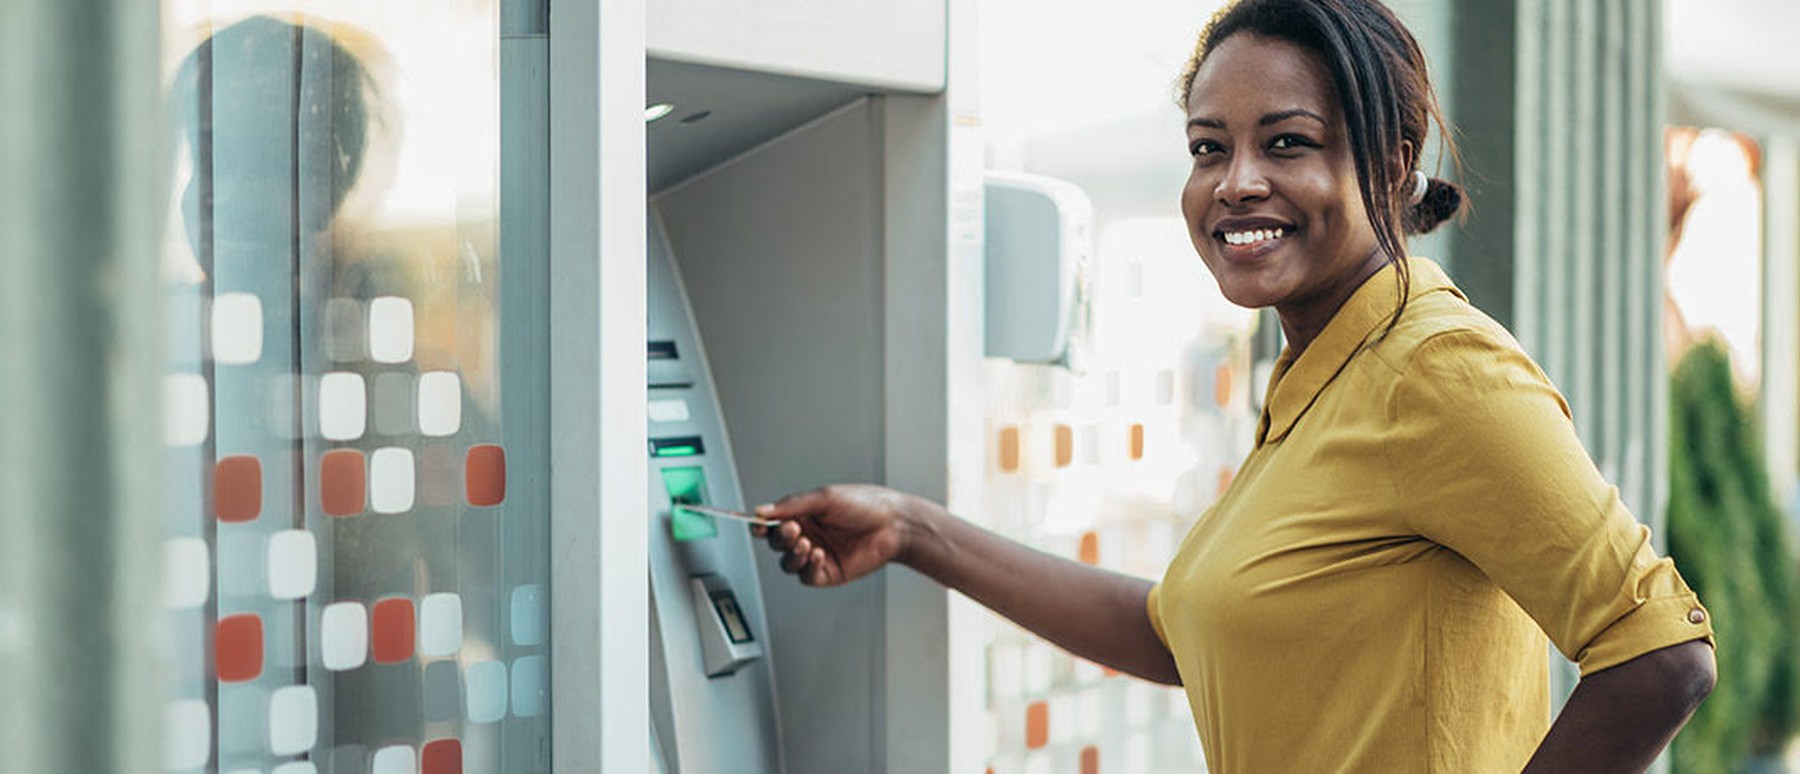 Een vrouw doet haar bankkaart in een pinautomaat